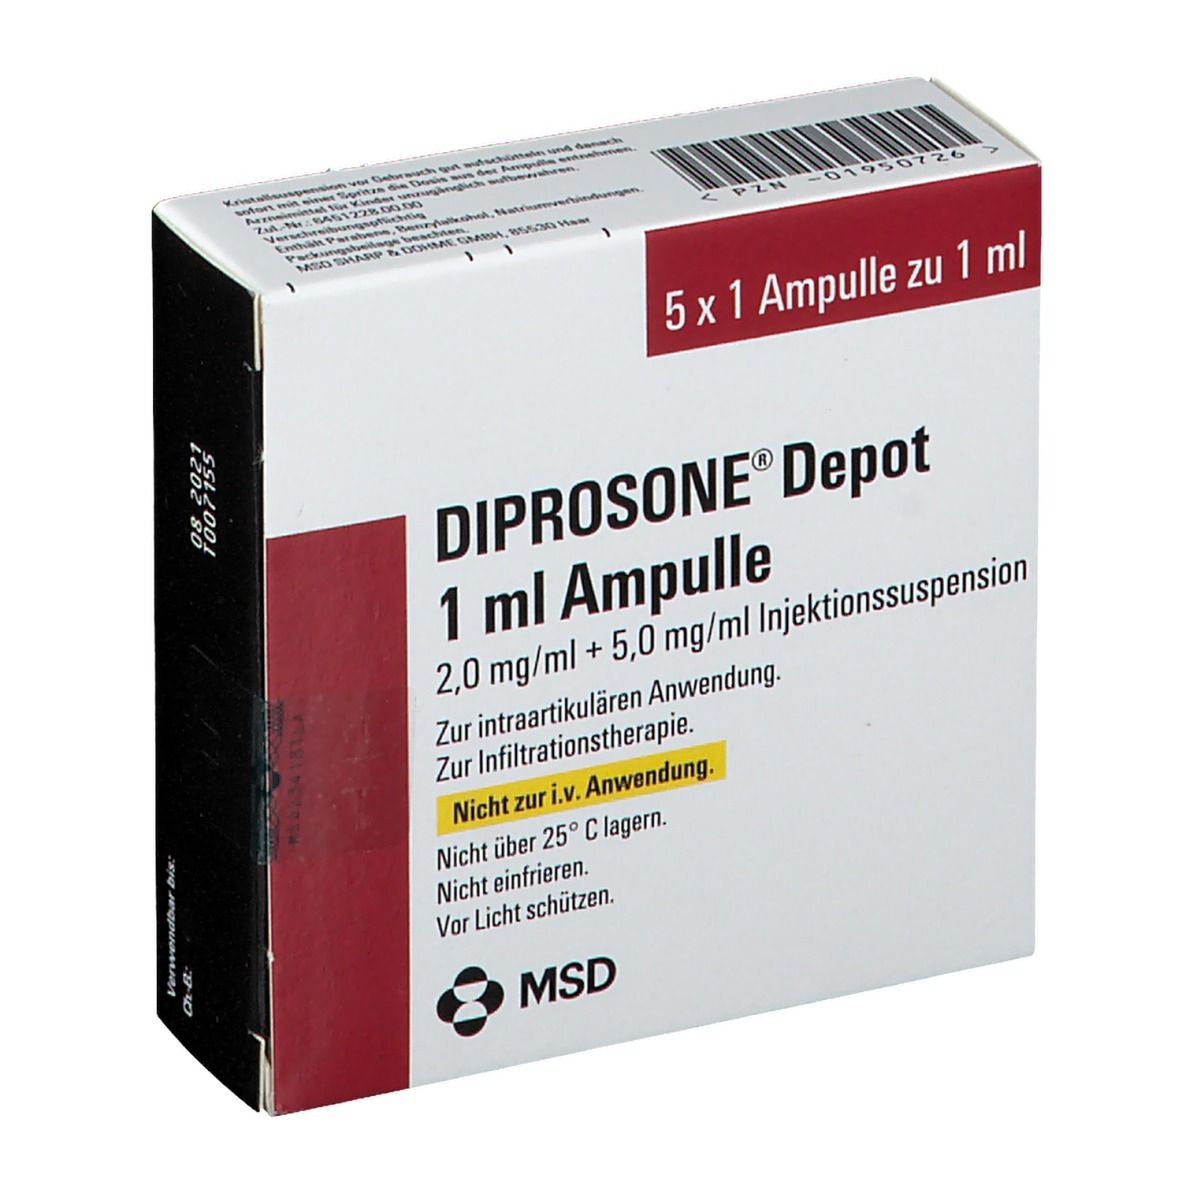 DIPROSONE® Depot 1 ml Ampulle